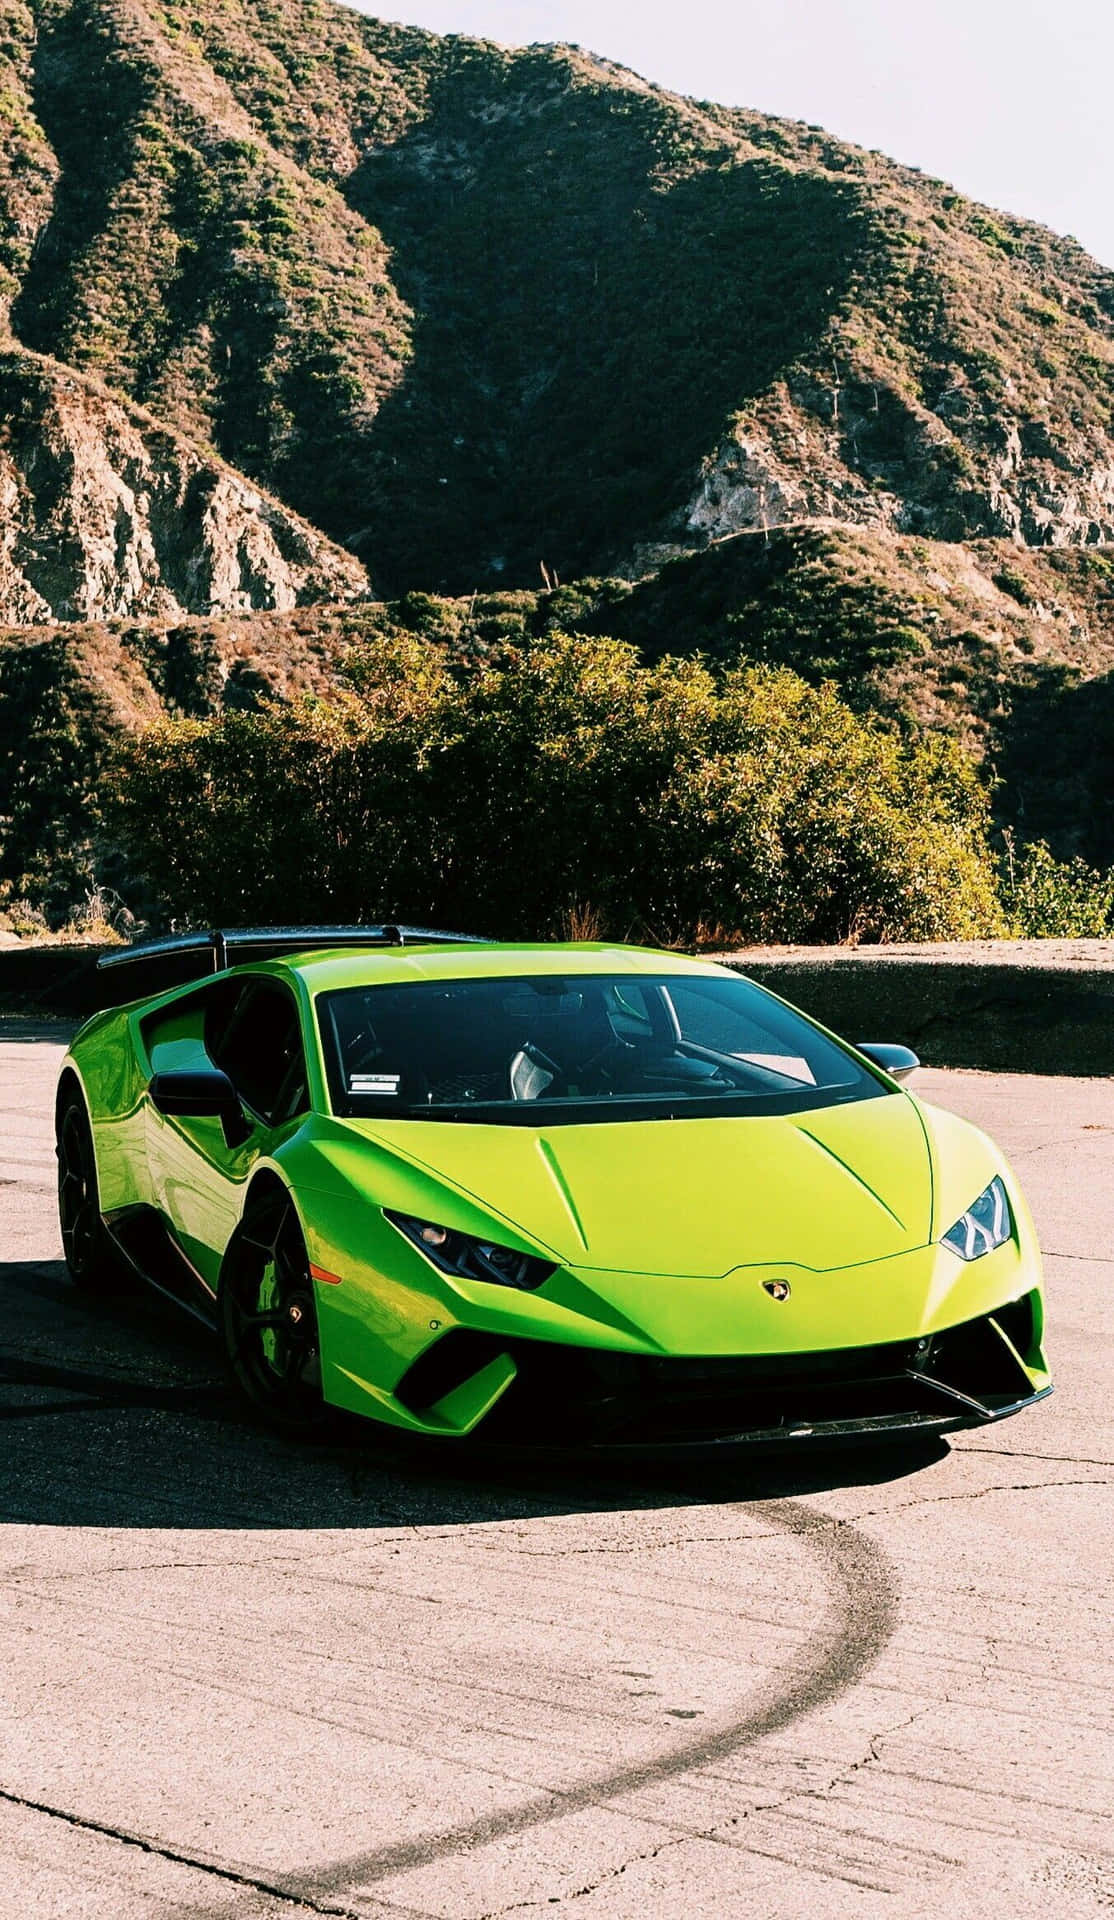 Beschleunigensie Ihr Stilspiel Mit Diesem Auffälligen Grünen Lamborghini. Wallpaper